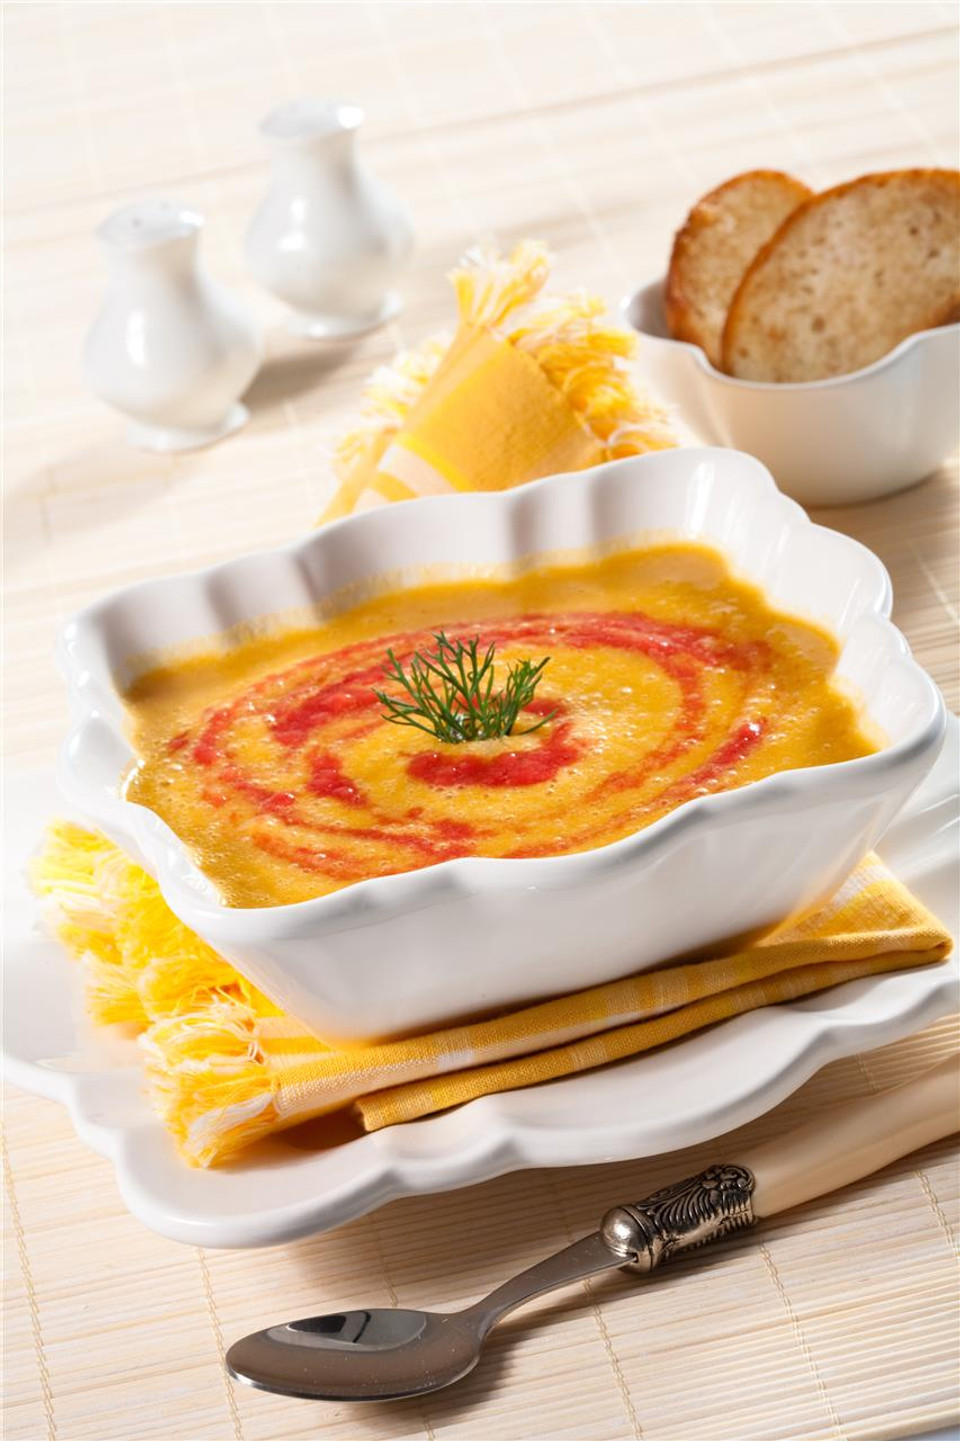 Суп-пюре из чечевицы, пошаговый рецепт на ккал, фото, ингредиенты - Констанция